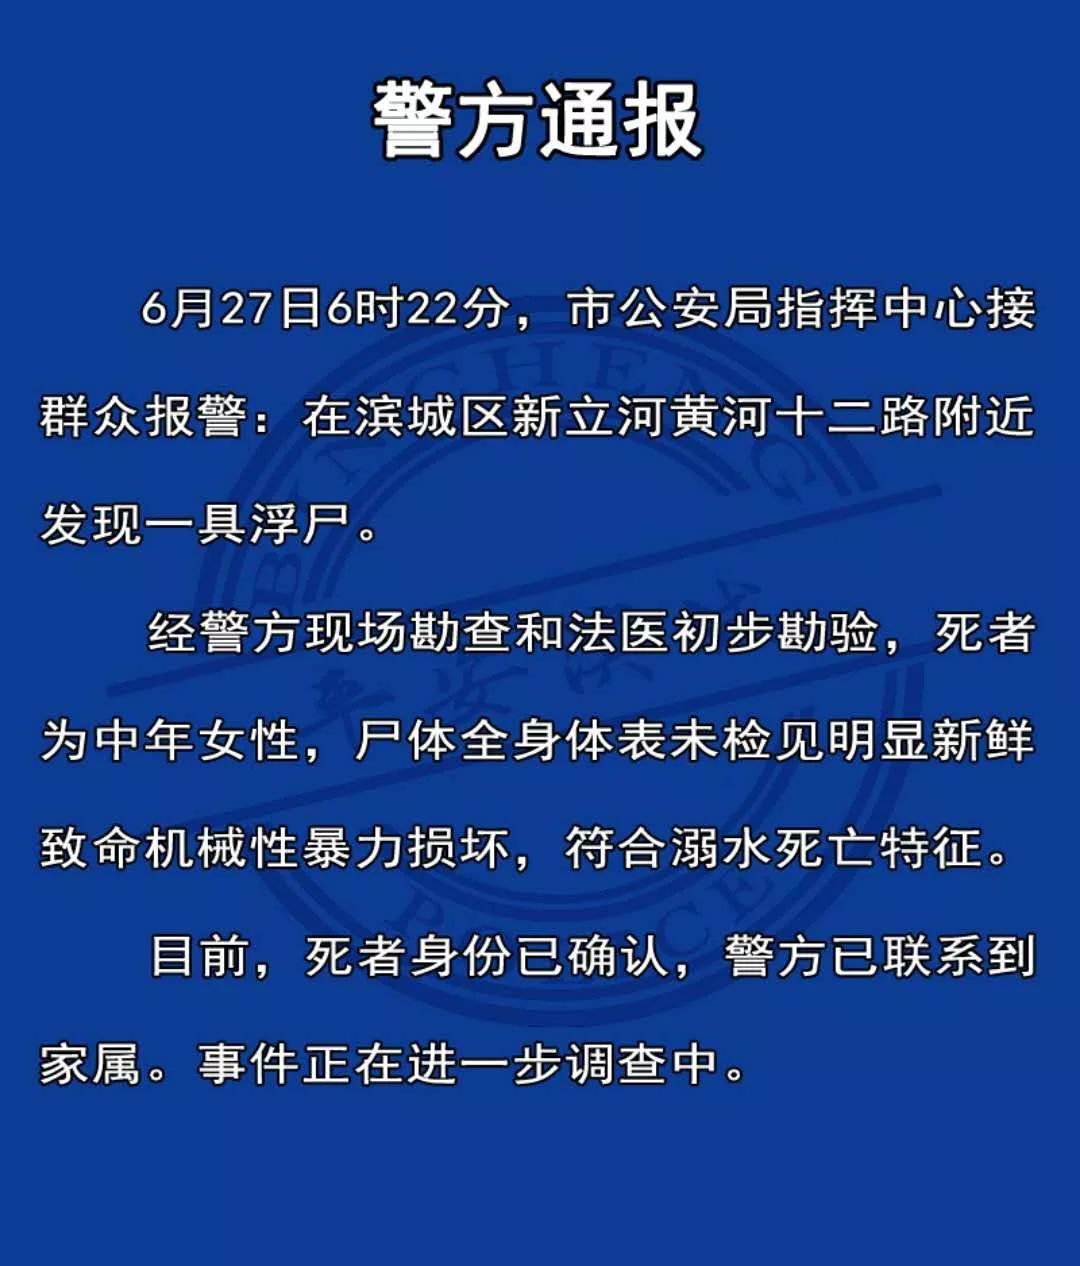 综合:滨州蓝天救援队,鲁中晨报黄河三角洲新闻,滨州滨城公安返回搜狐